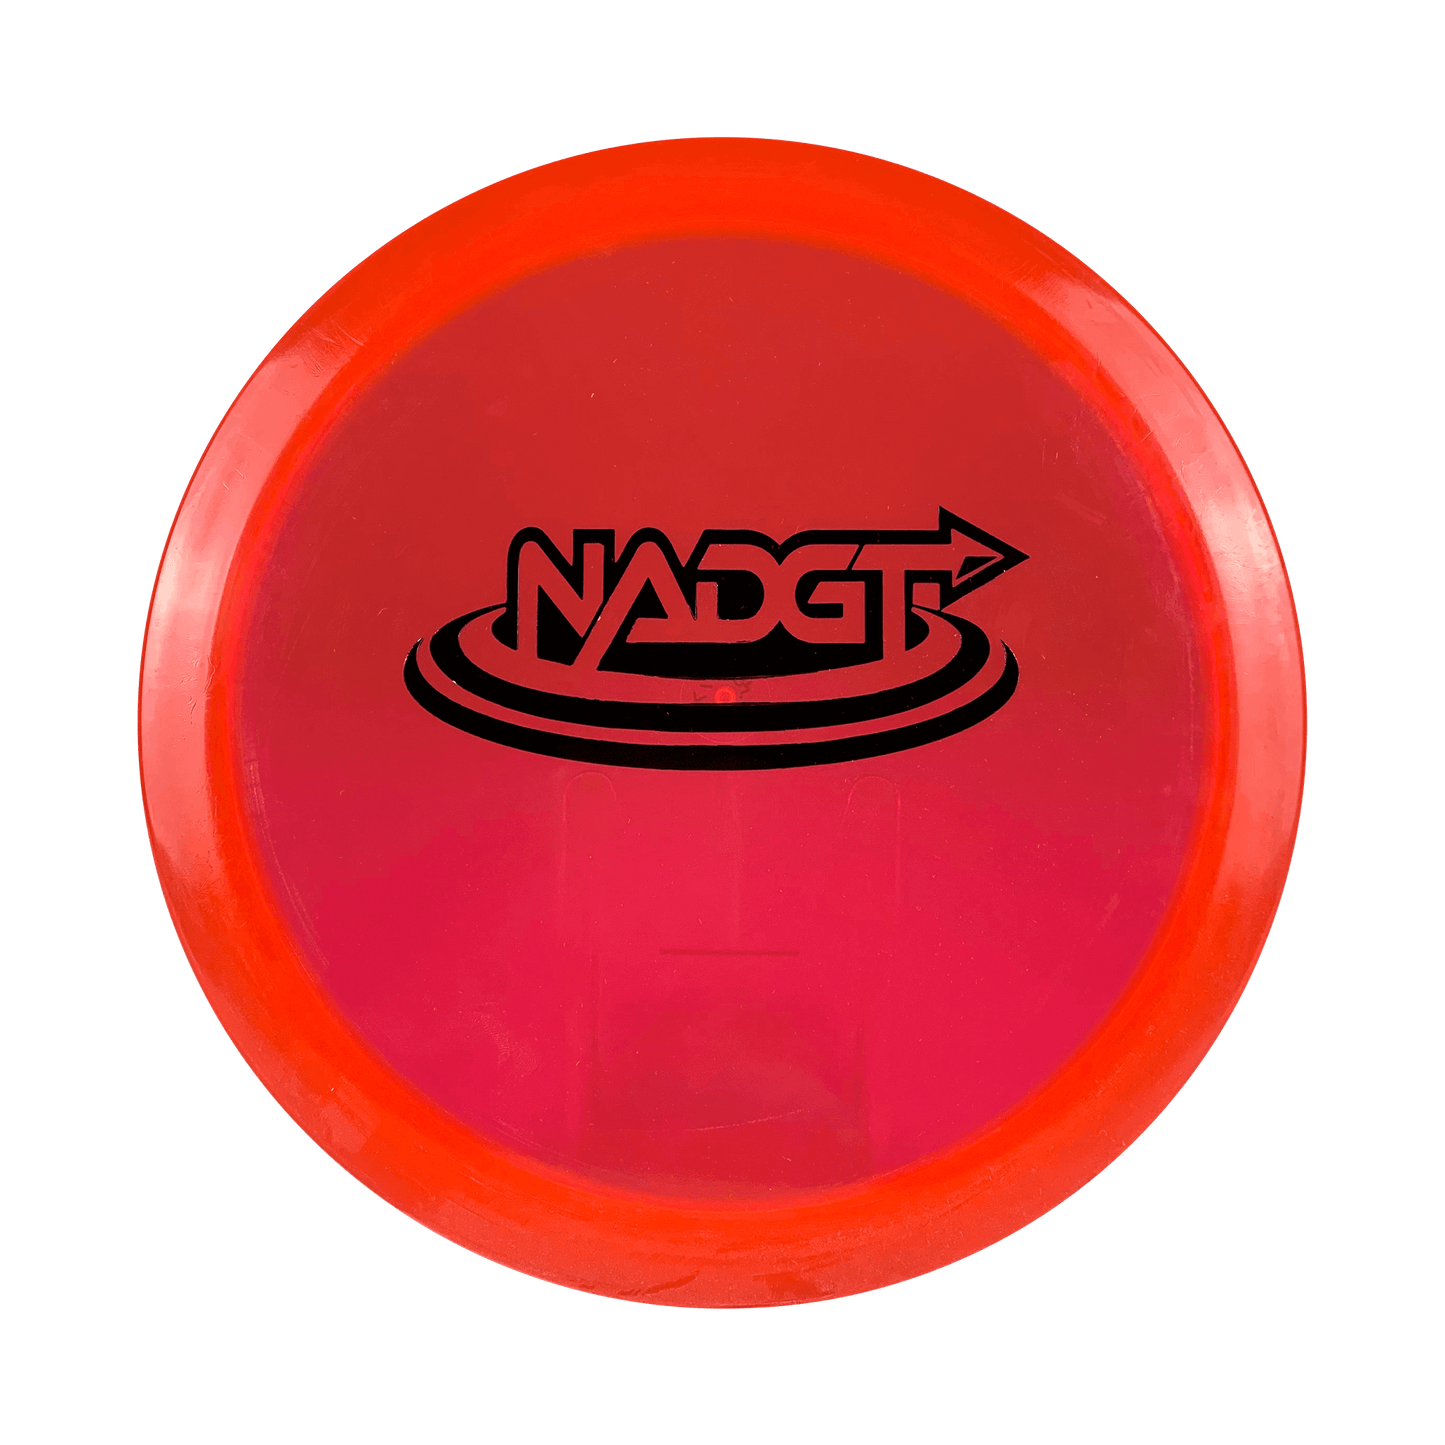 Pinnacle Patriot - NADGT Stamp Disc Legacy red 175 